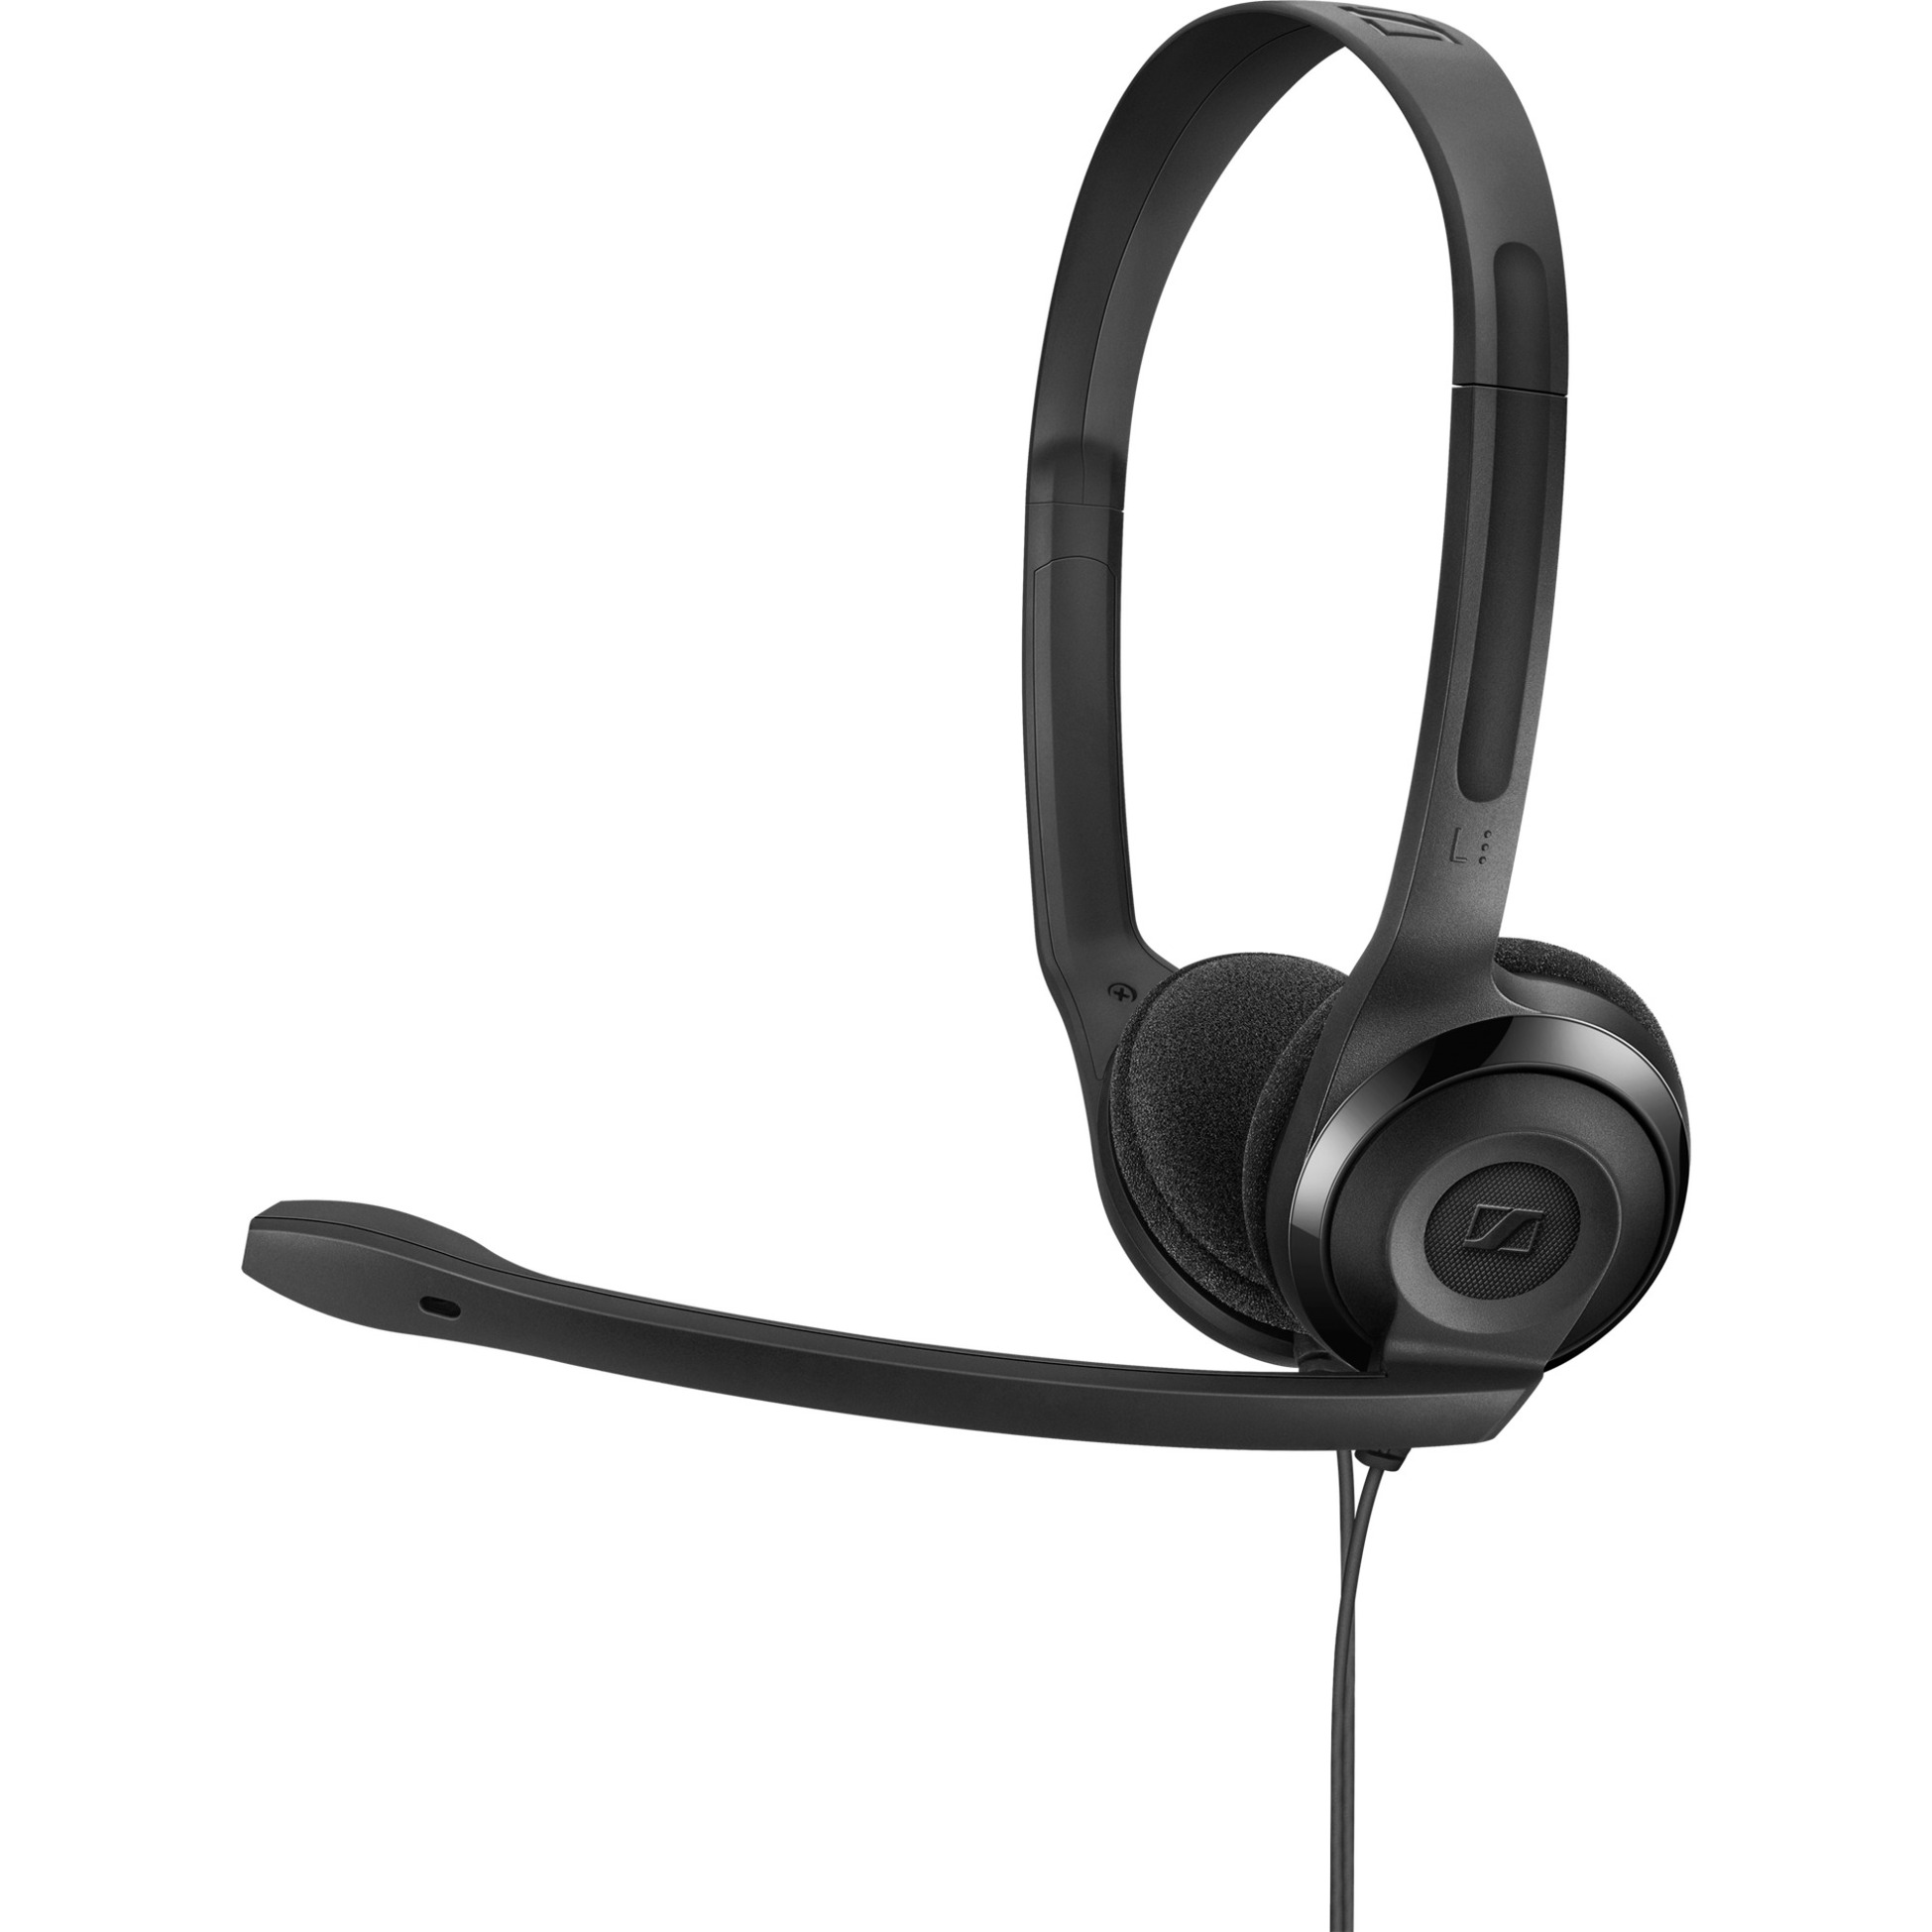 Image of Alternate - PC 3 CHAT, Headset online einkaufen bei Alternate